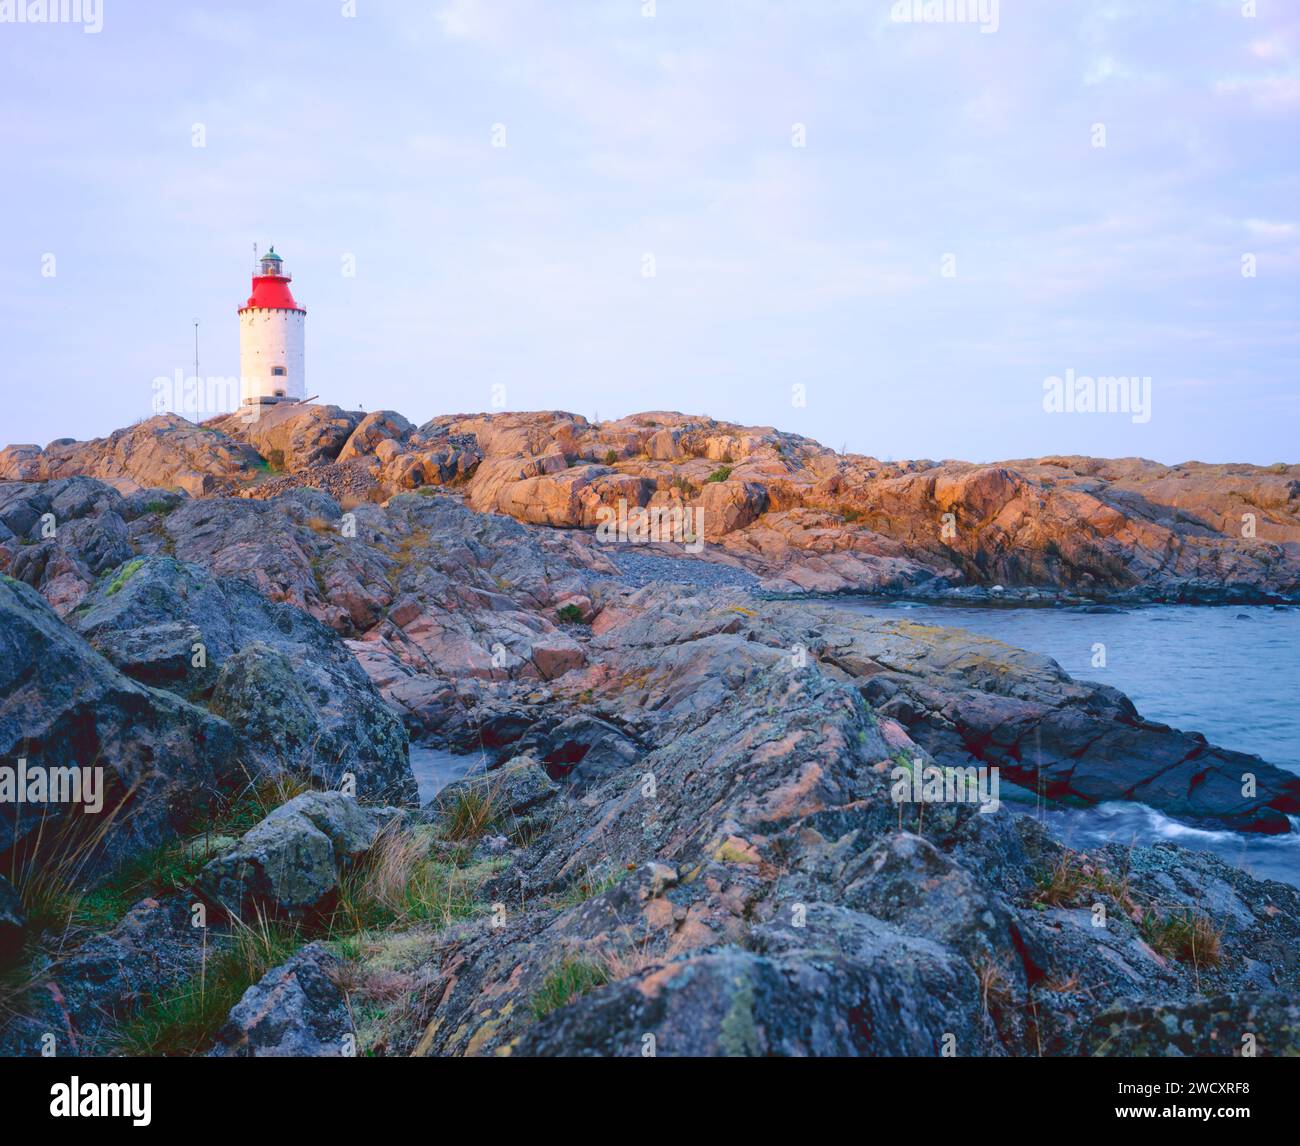 Landsort lighthouse, Sweden Stock Photo